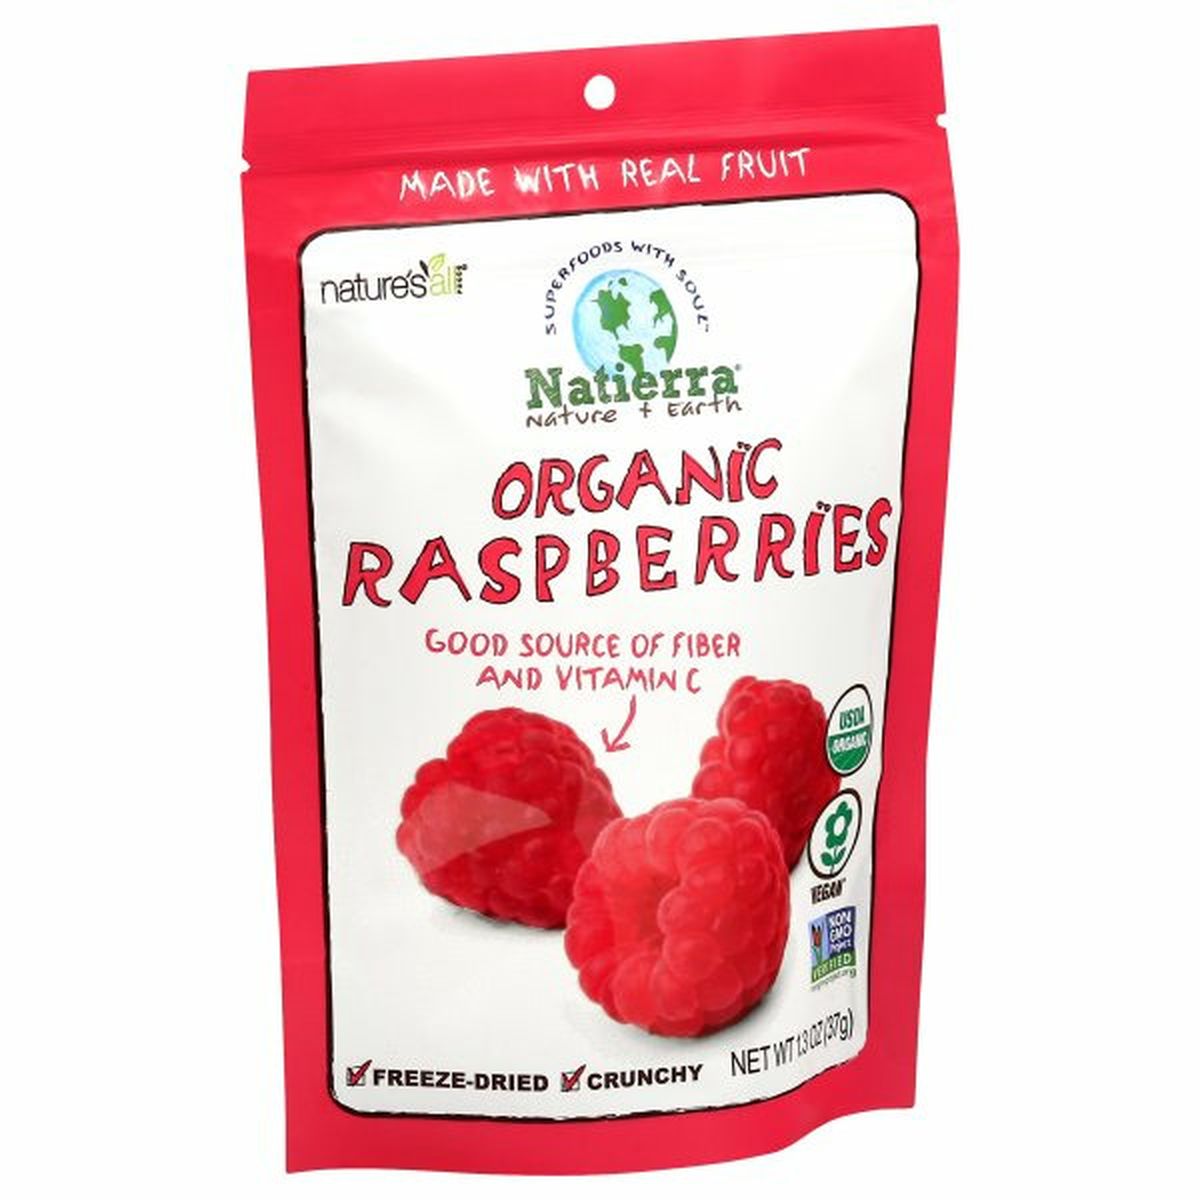 Calories in Natierra Raspberries, Organic